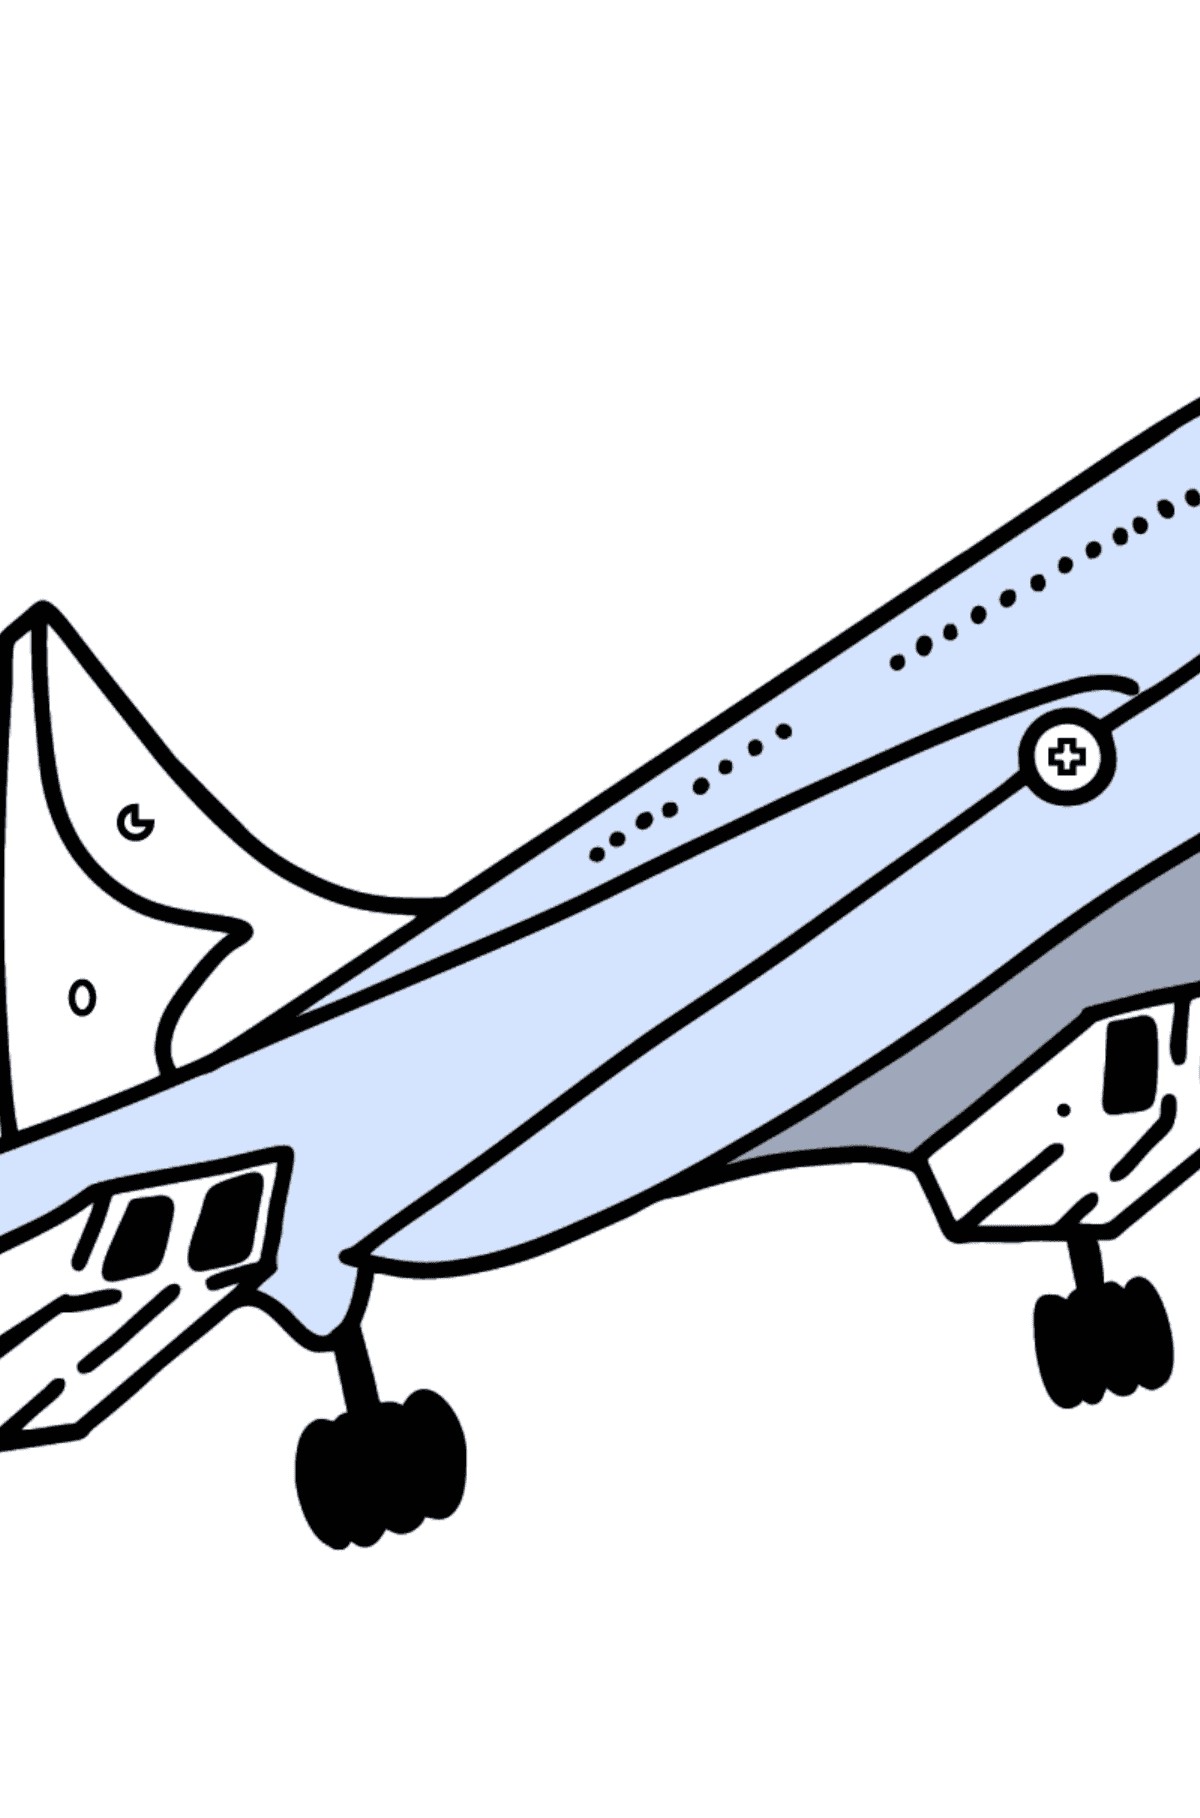 Раскраска Самолет Конкорд - Полезная картинка для Детей